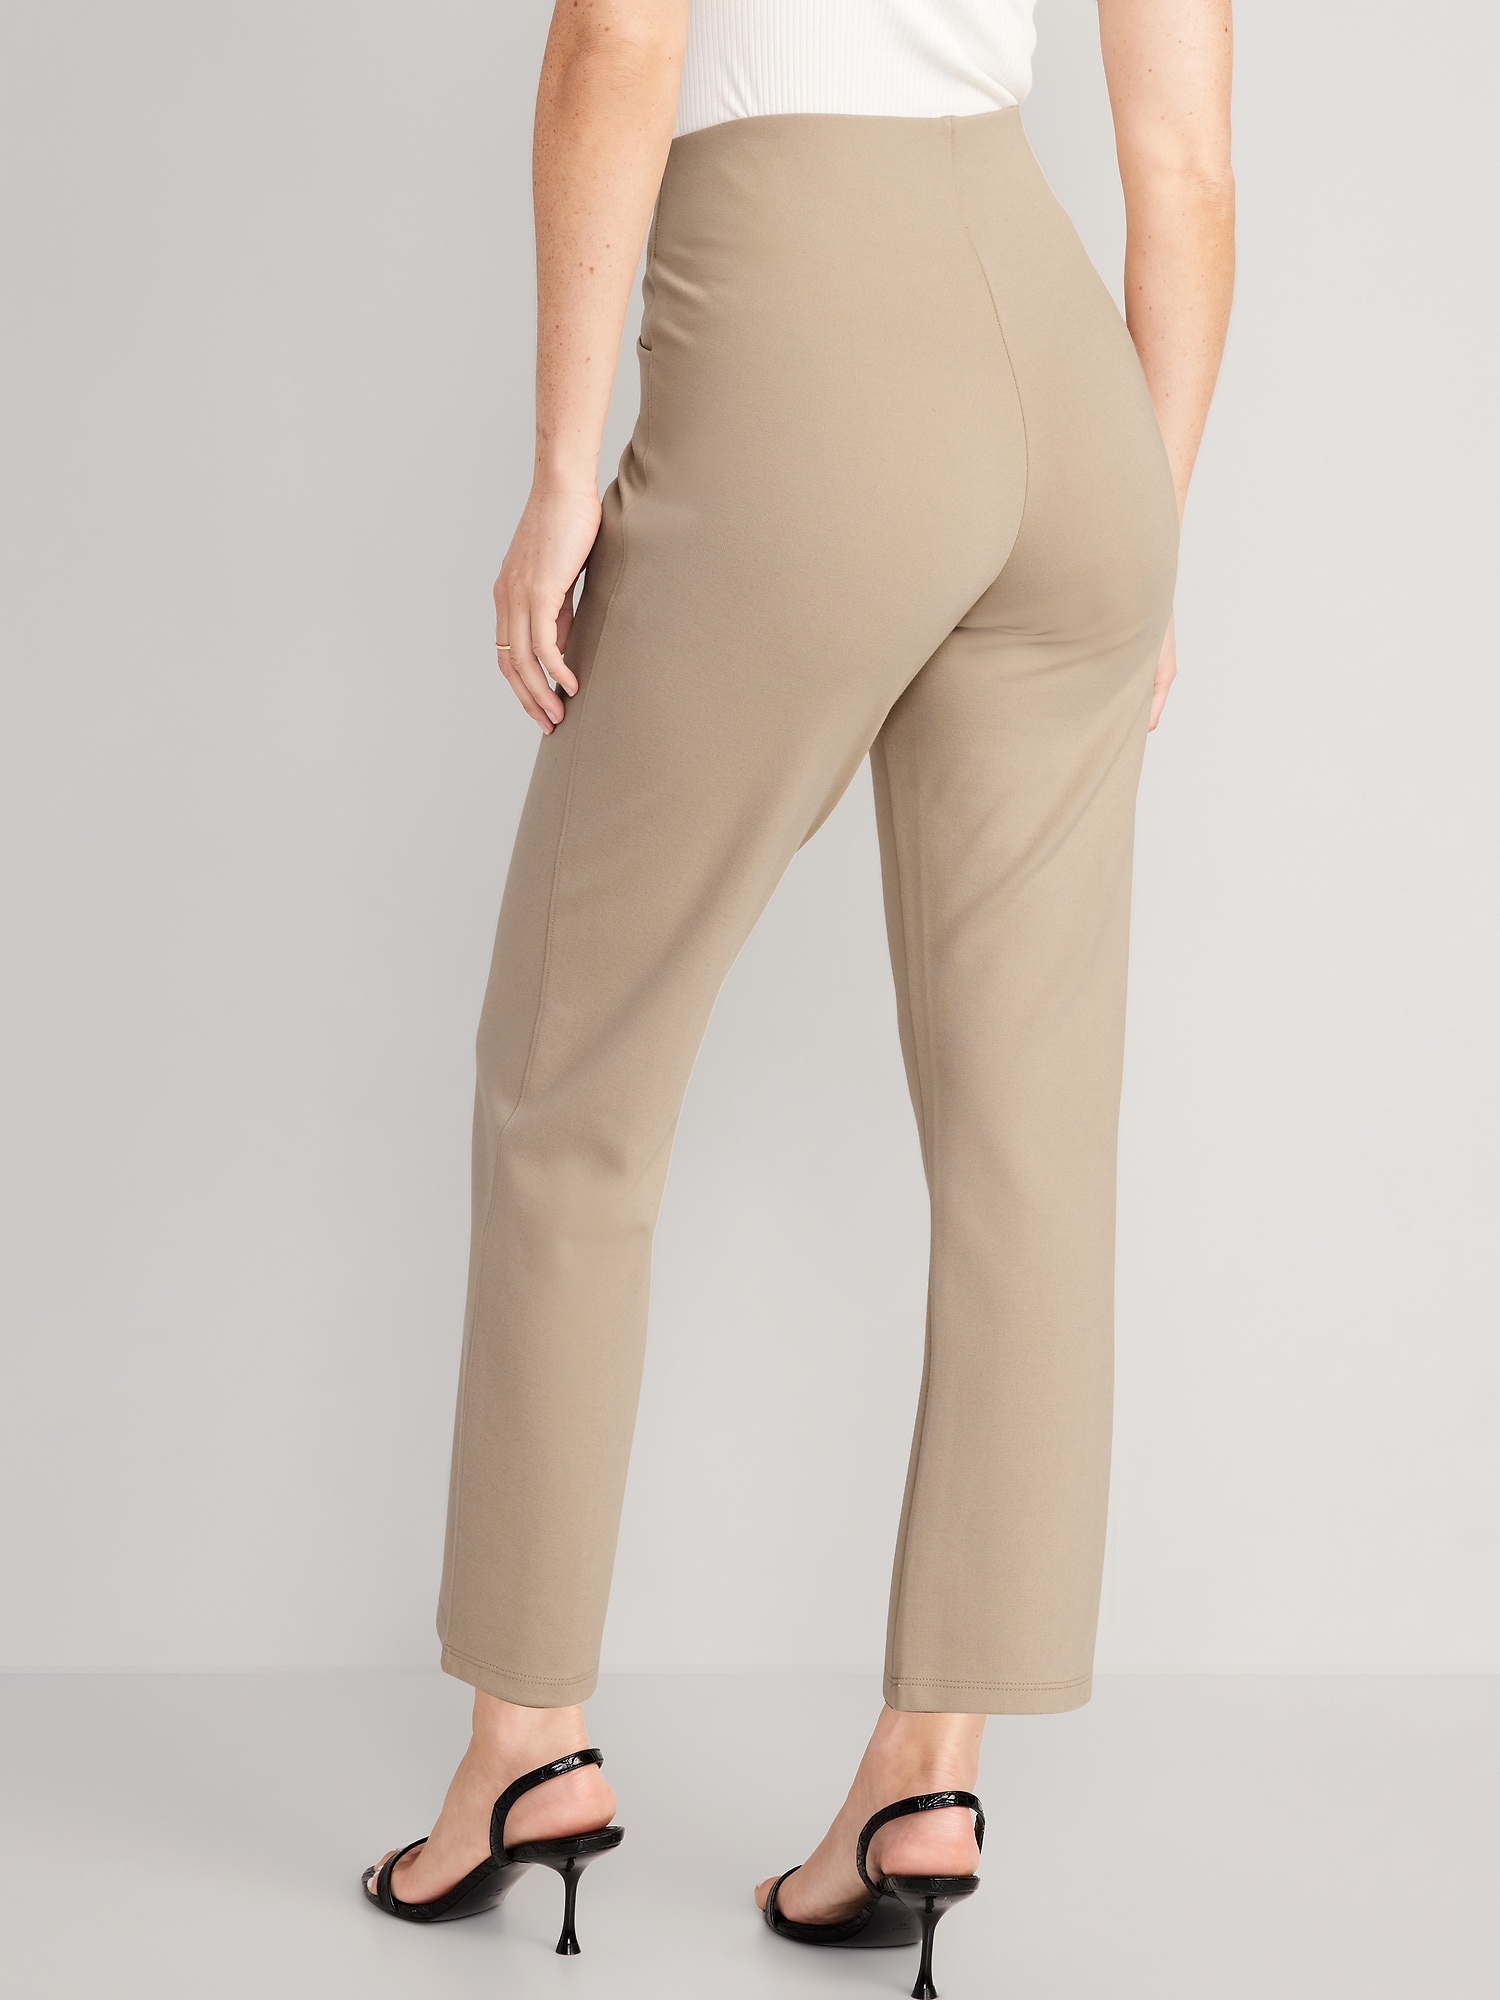 Women's Straight Leg Beige Dressy Pants - Formal Beige Careerwear Pants –  Moda Xpress